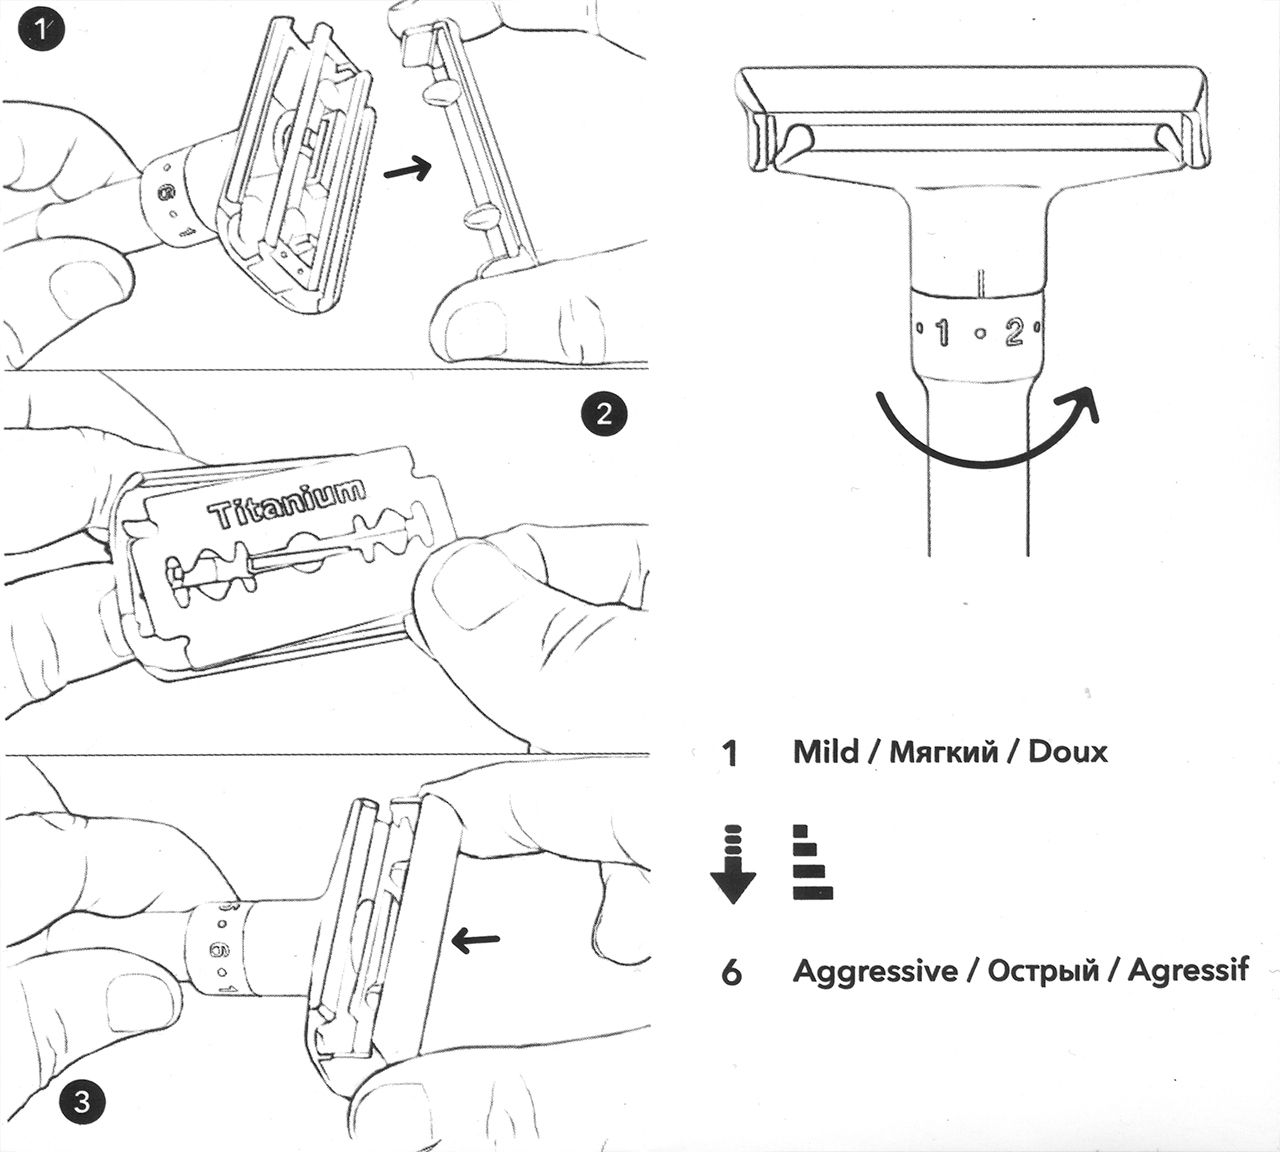 Instrukcja obsługi maszynki do golenia Qshave